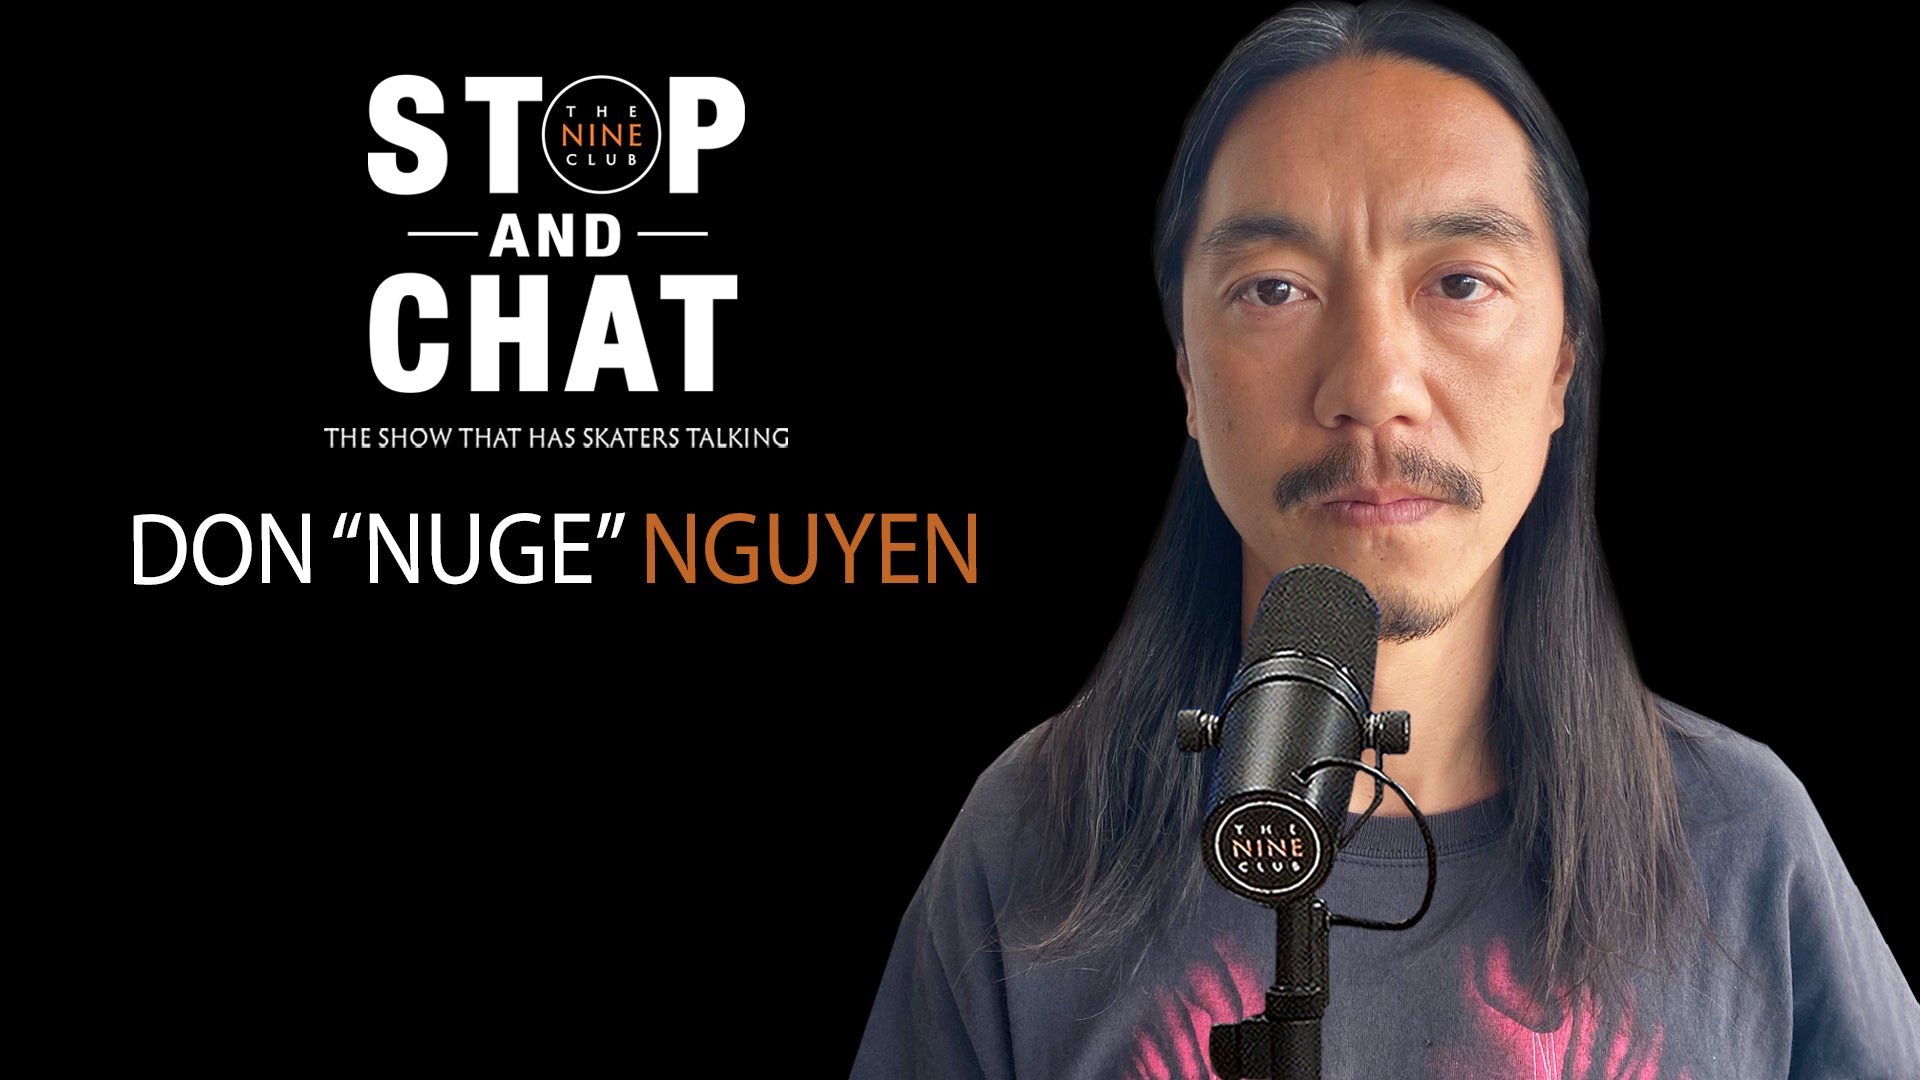 Don "Nuge" Nguyen